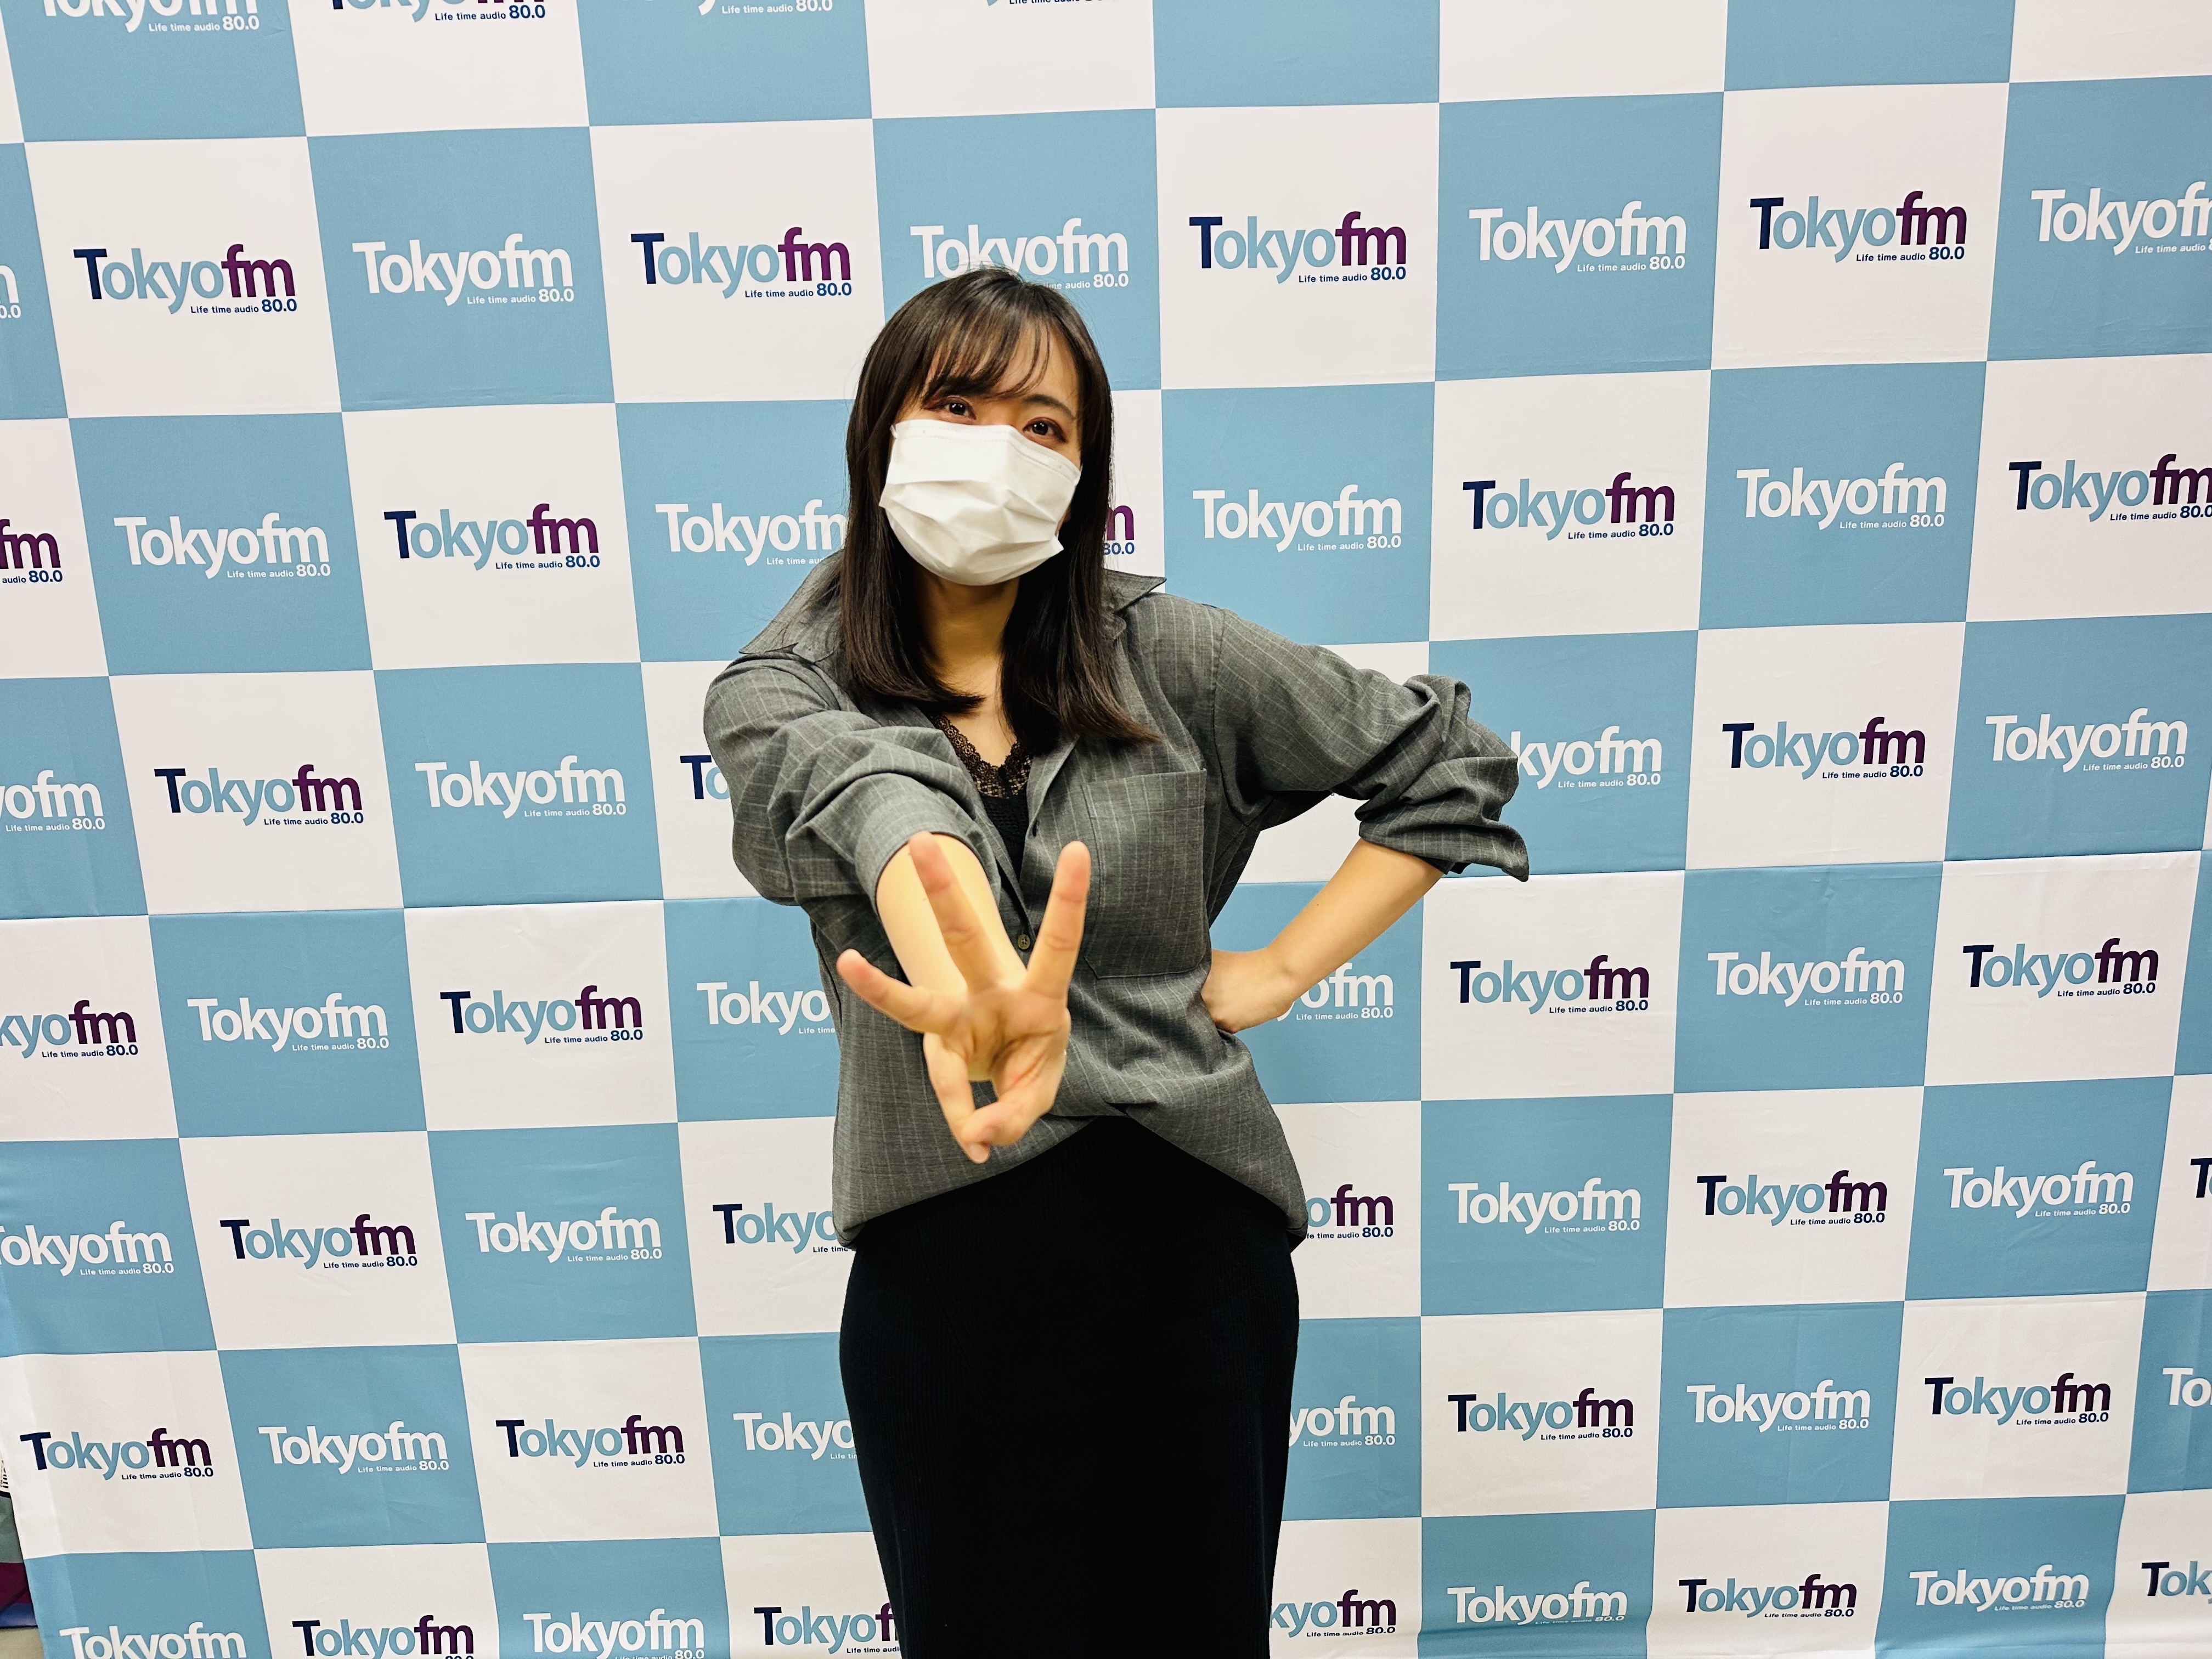 『上田瞳のPOWER UP RADIO supported by J-POWER』#3